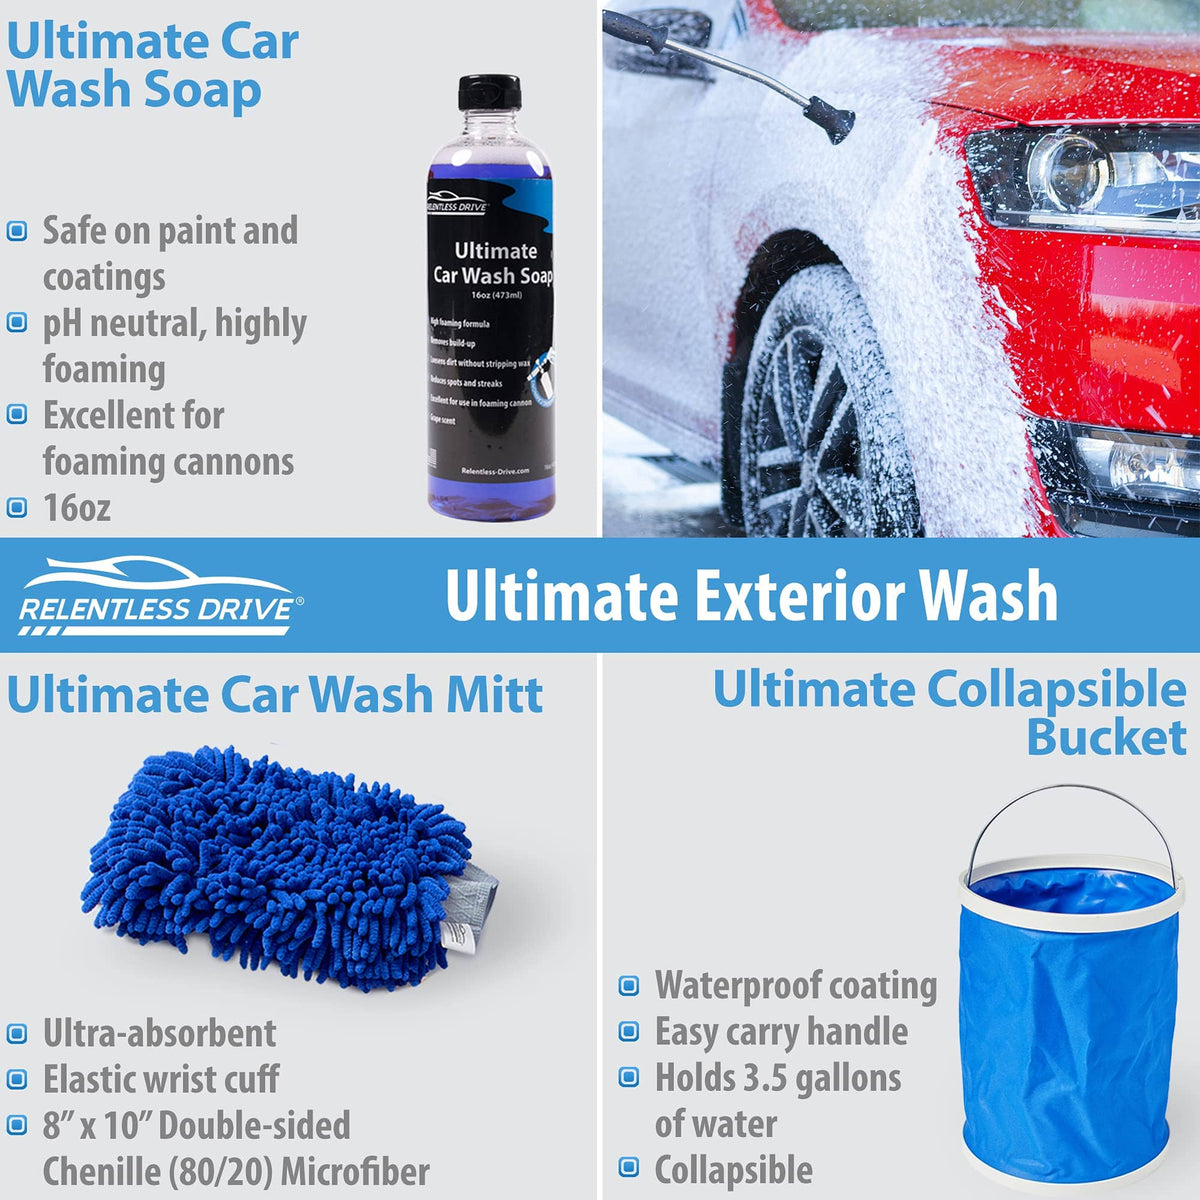  Relentless Drive Car Detailing Kit - Car Wash Kit, Car